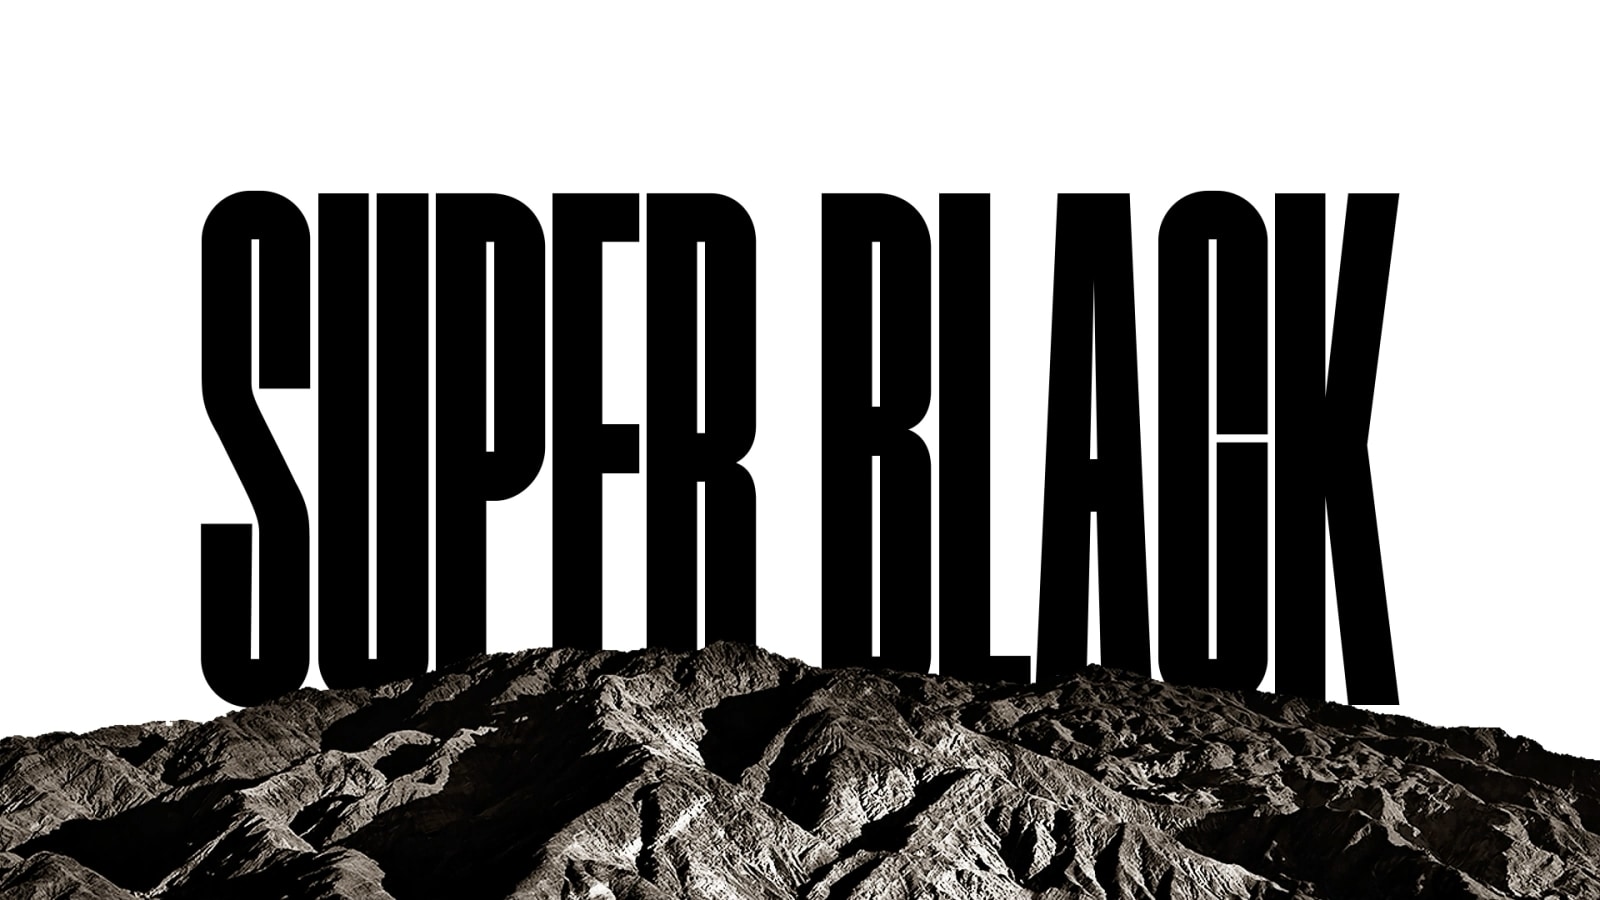 Der Schriftzug „SUPER BLACK“ erscheint in fetten schwarzen Grossbuchstaben. Ein schwarzes, scharf umrissenes Gebirge bedeckt dann die Buchstaben und gibt den Blick auf ein Dorf und Sanddünen frei. Die schwarze Kopie verschwindet hinter einem schwarzen Himmel.